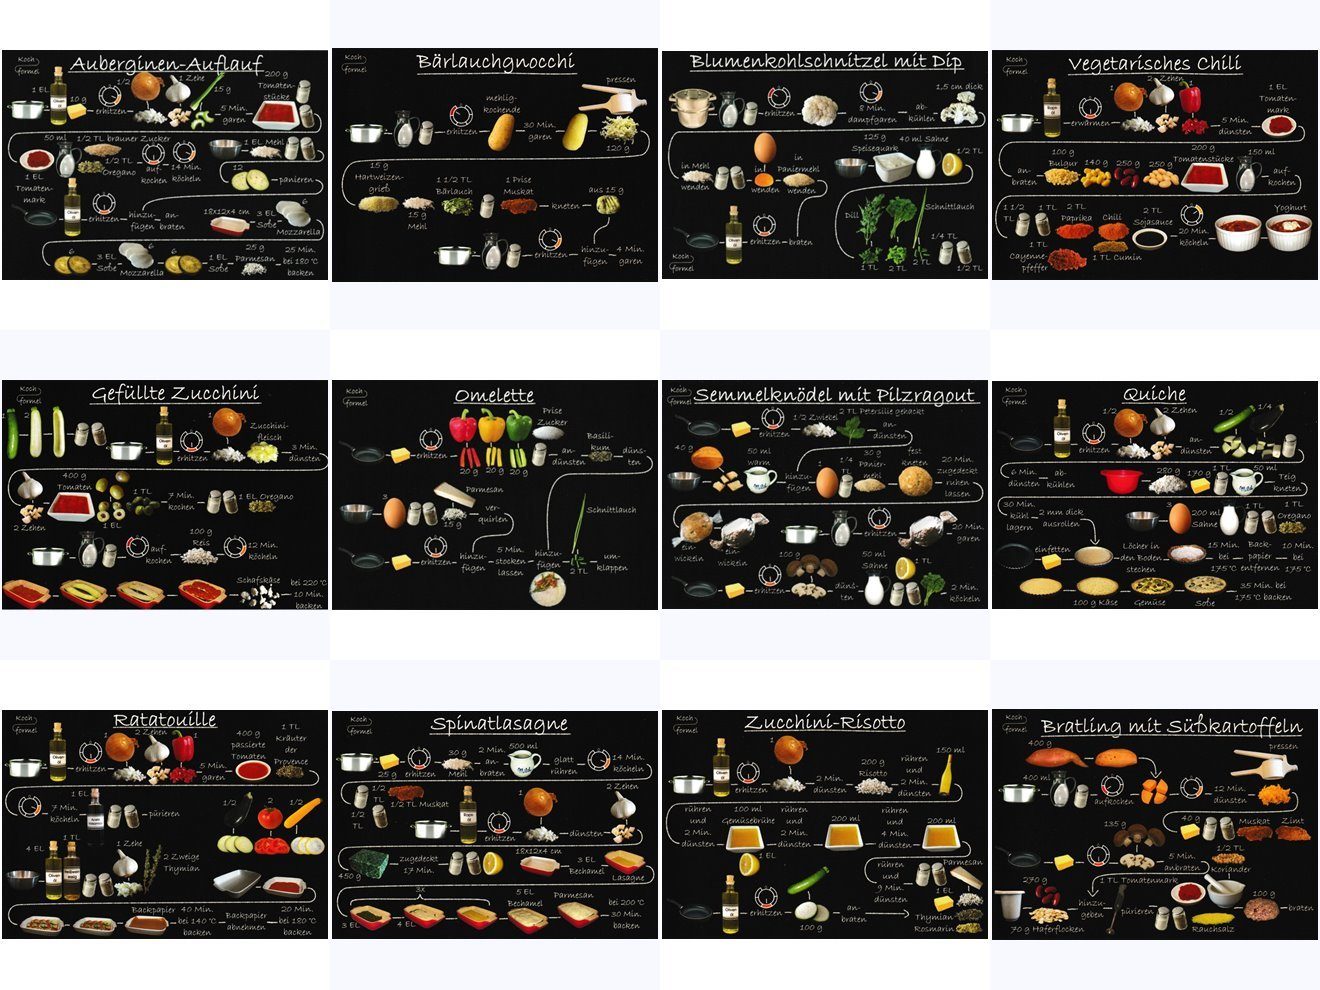 "Vegetarische Gerichte Postkarte Komplett-Set Rezept-n" auf 12